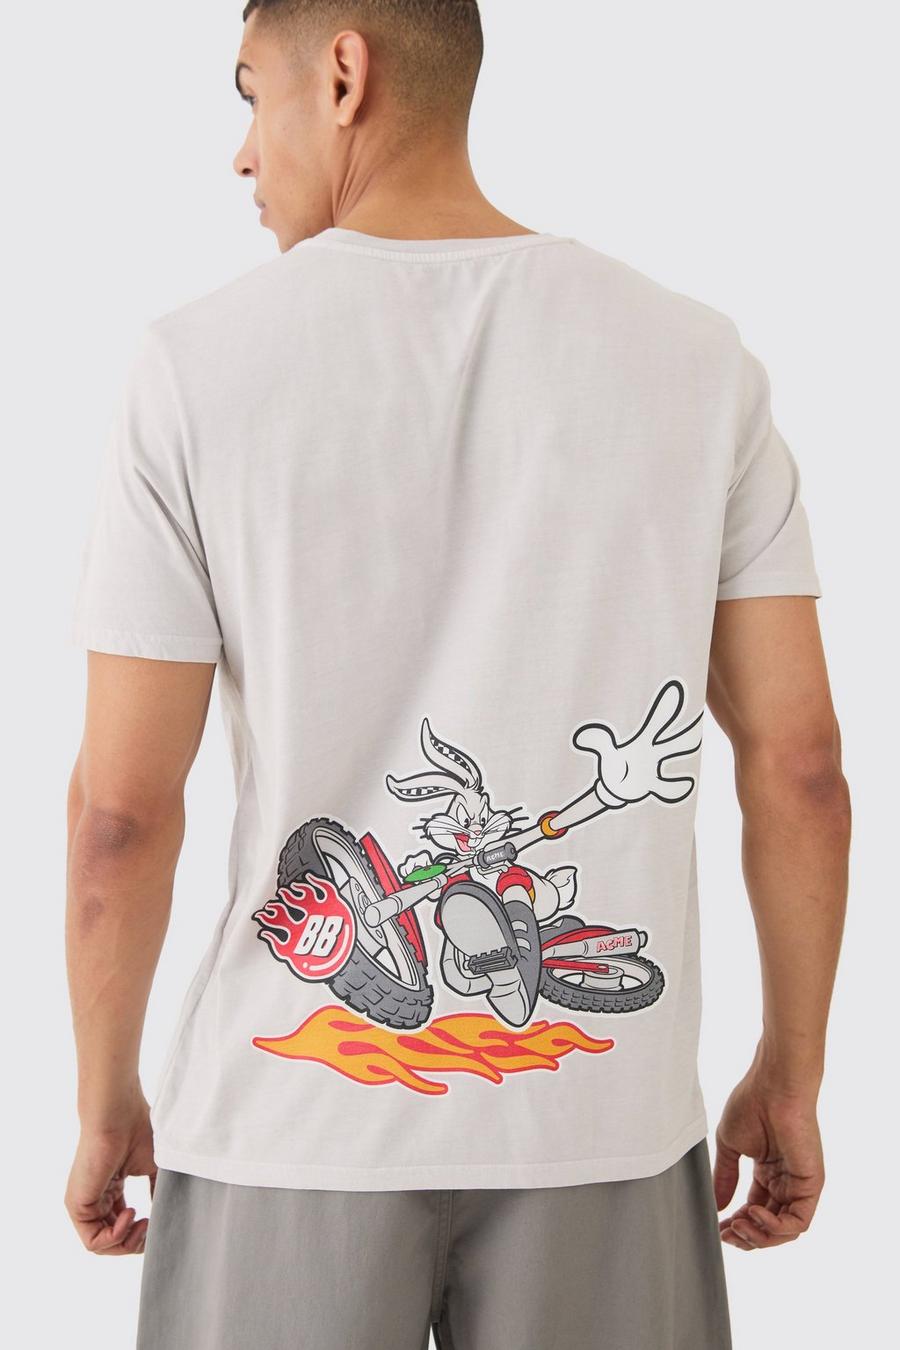 T-shirt oversize ufficiale dei Looney Tunes in lavaggio Bugs Bunny, Stone